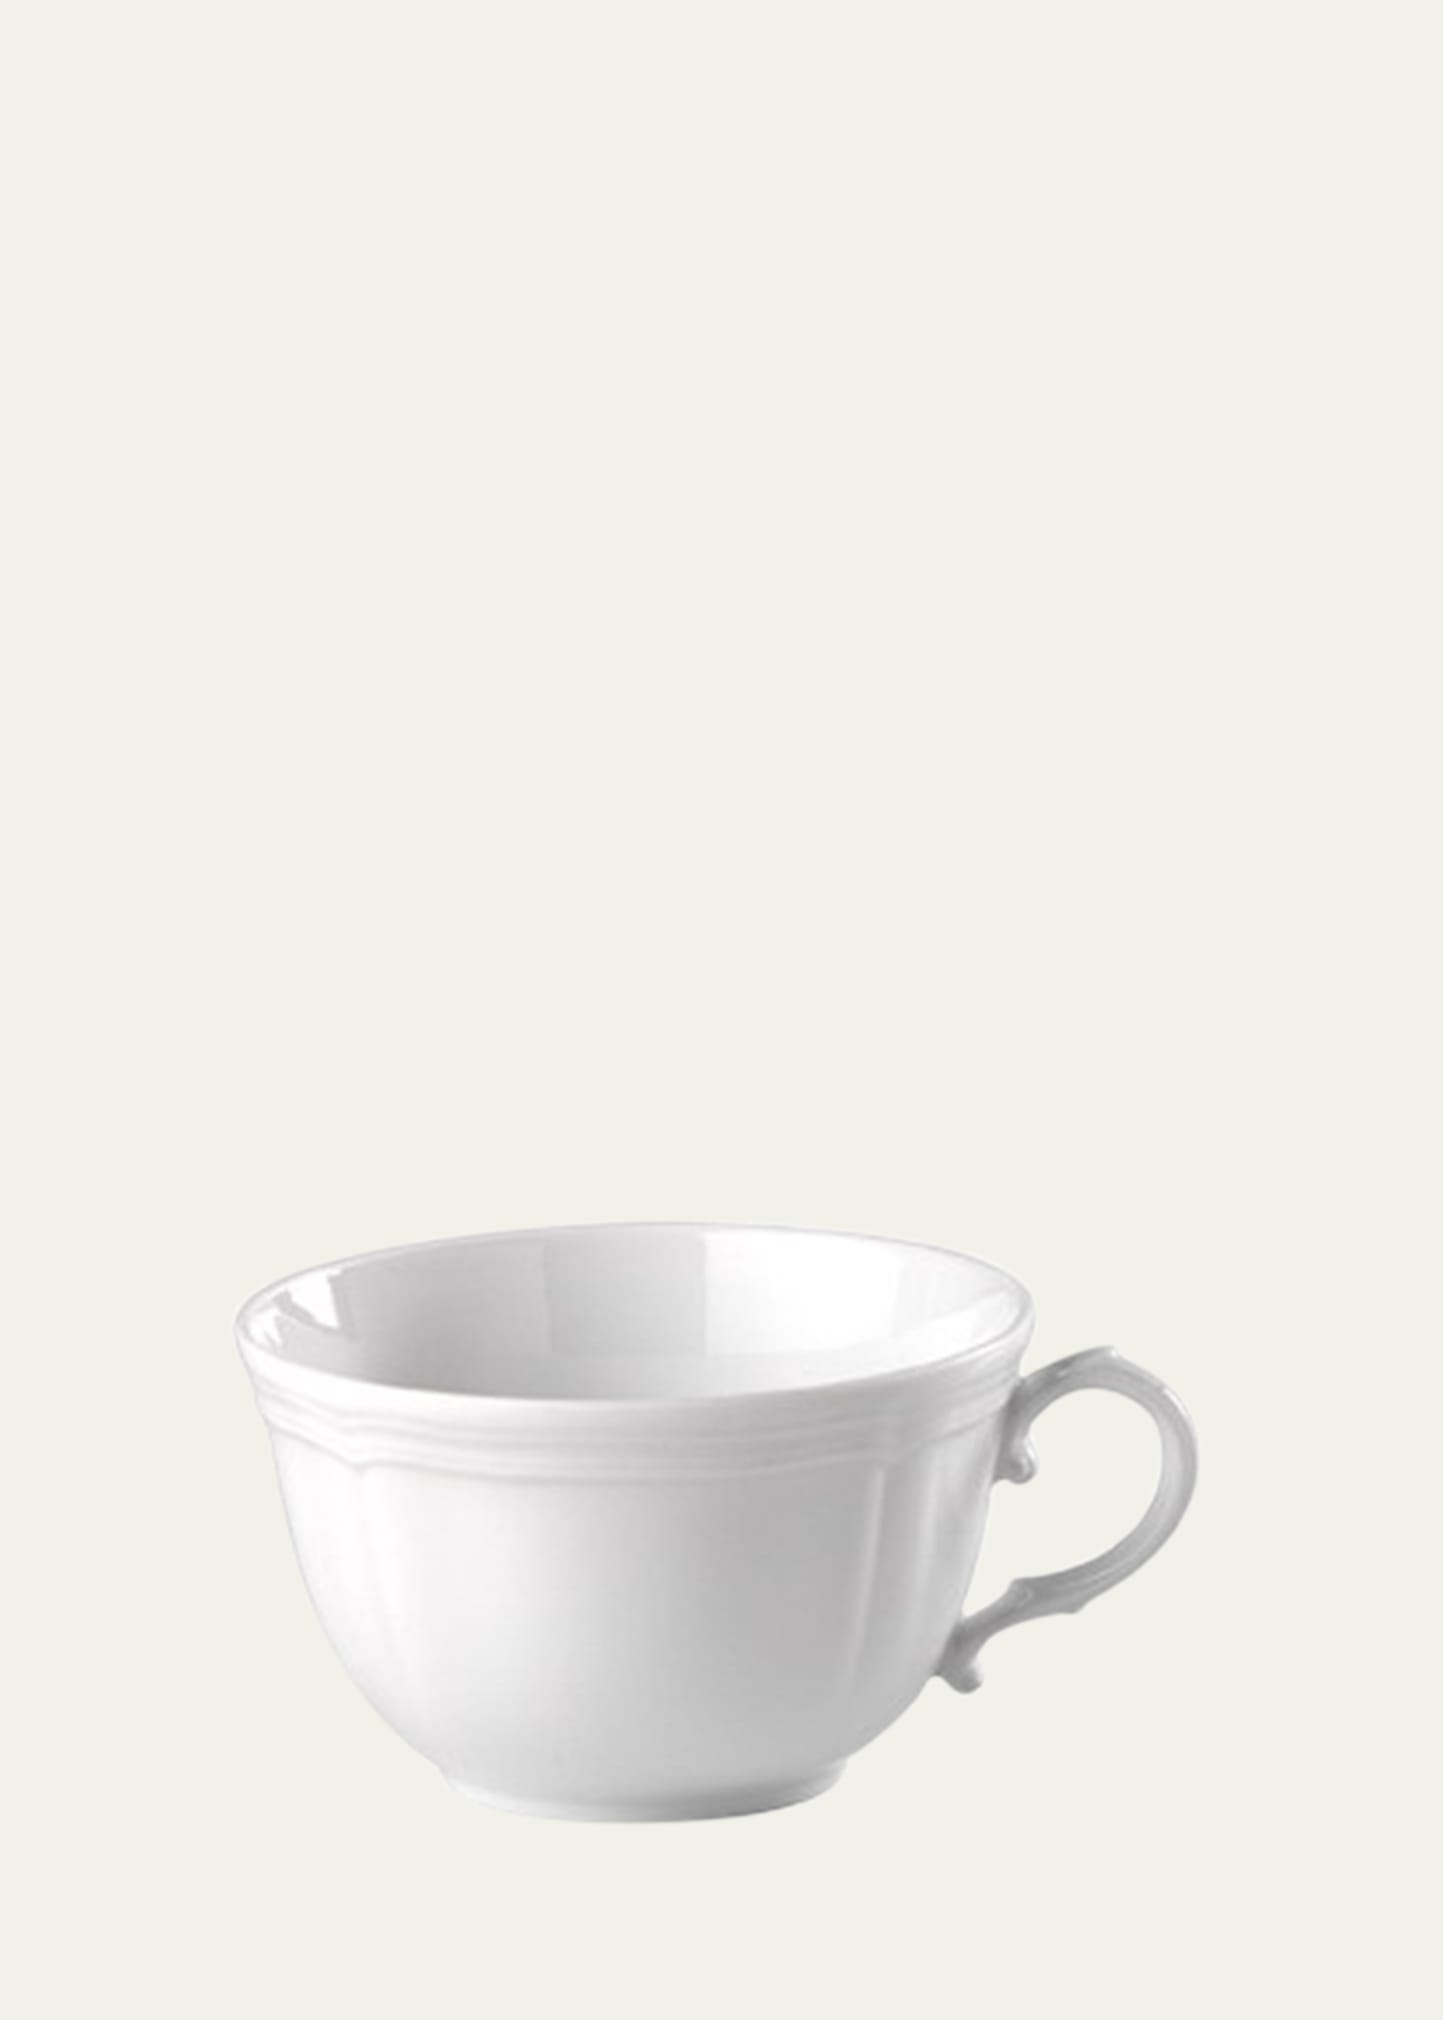 Ginori 1735 Antico Doccia Tea Cup, 8.1 Oz. In Pervinca